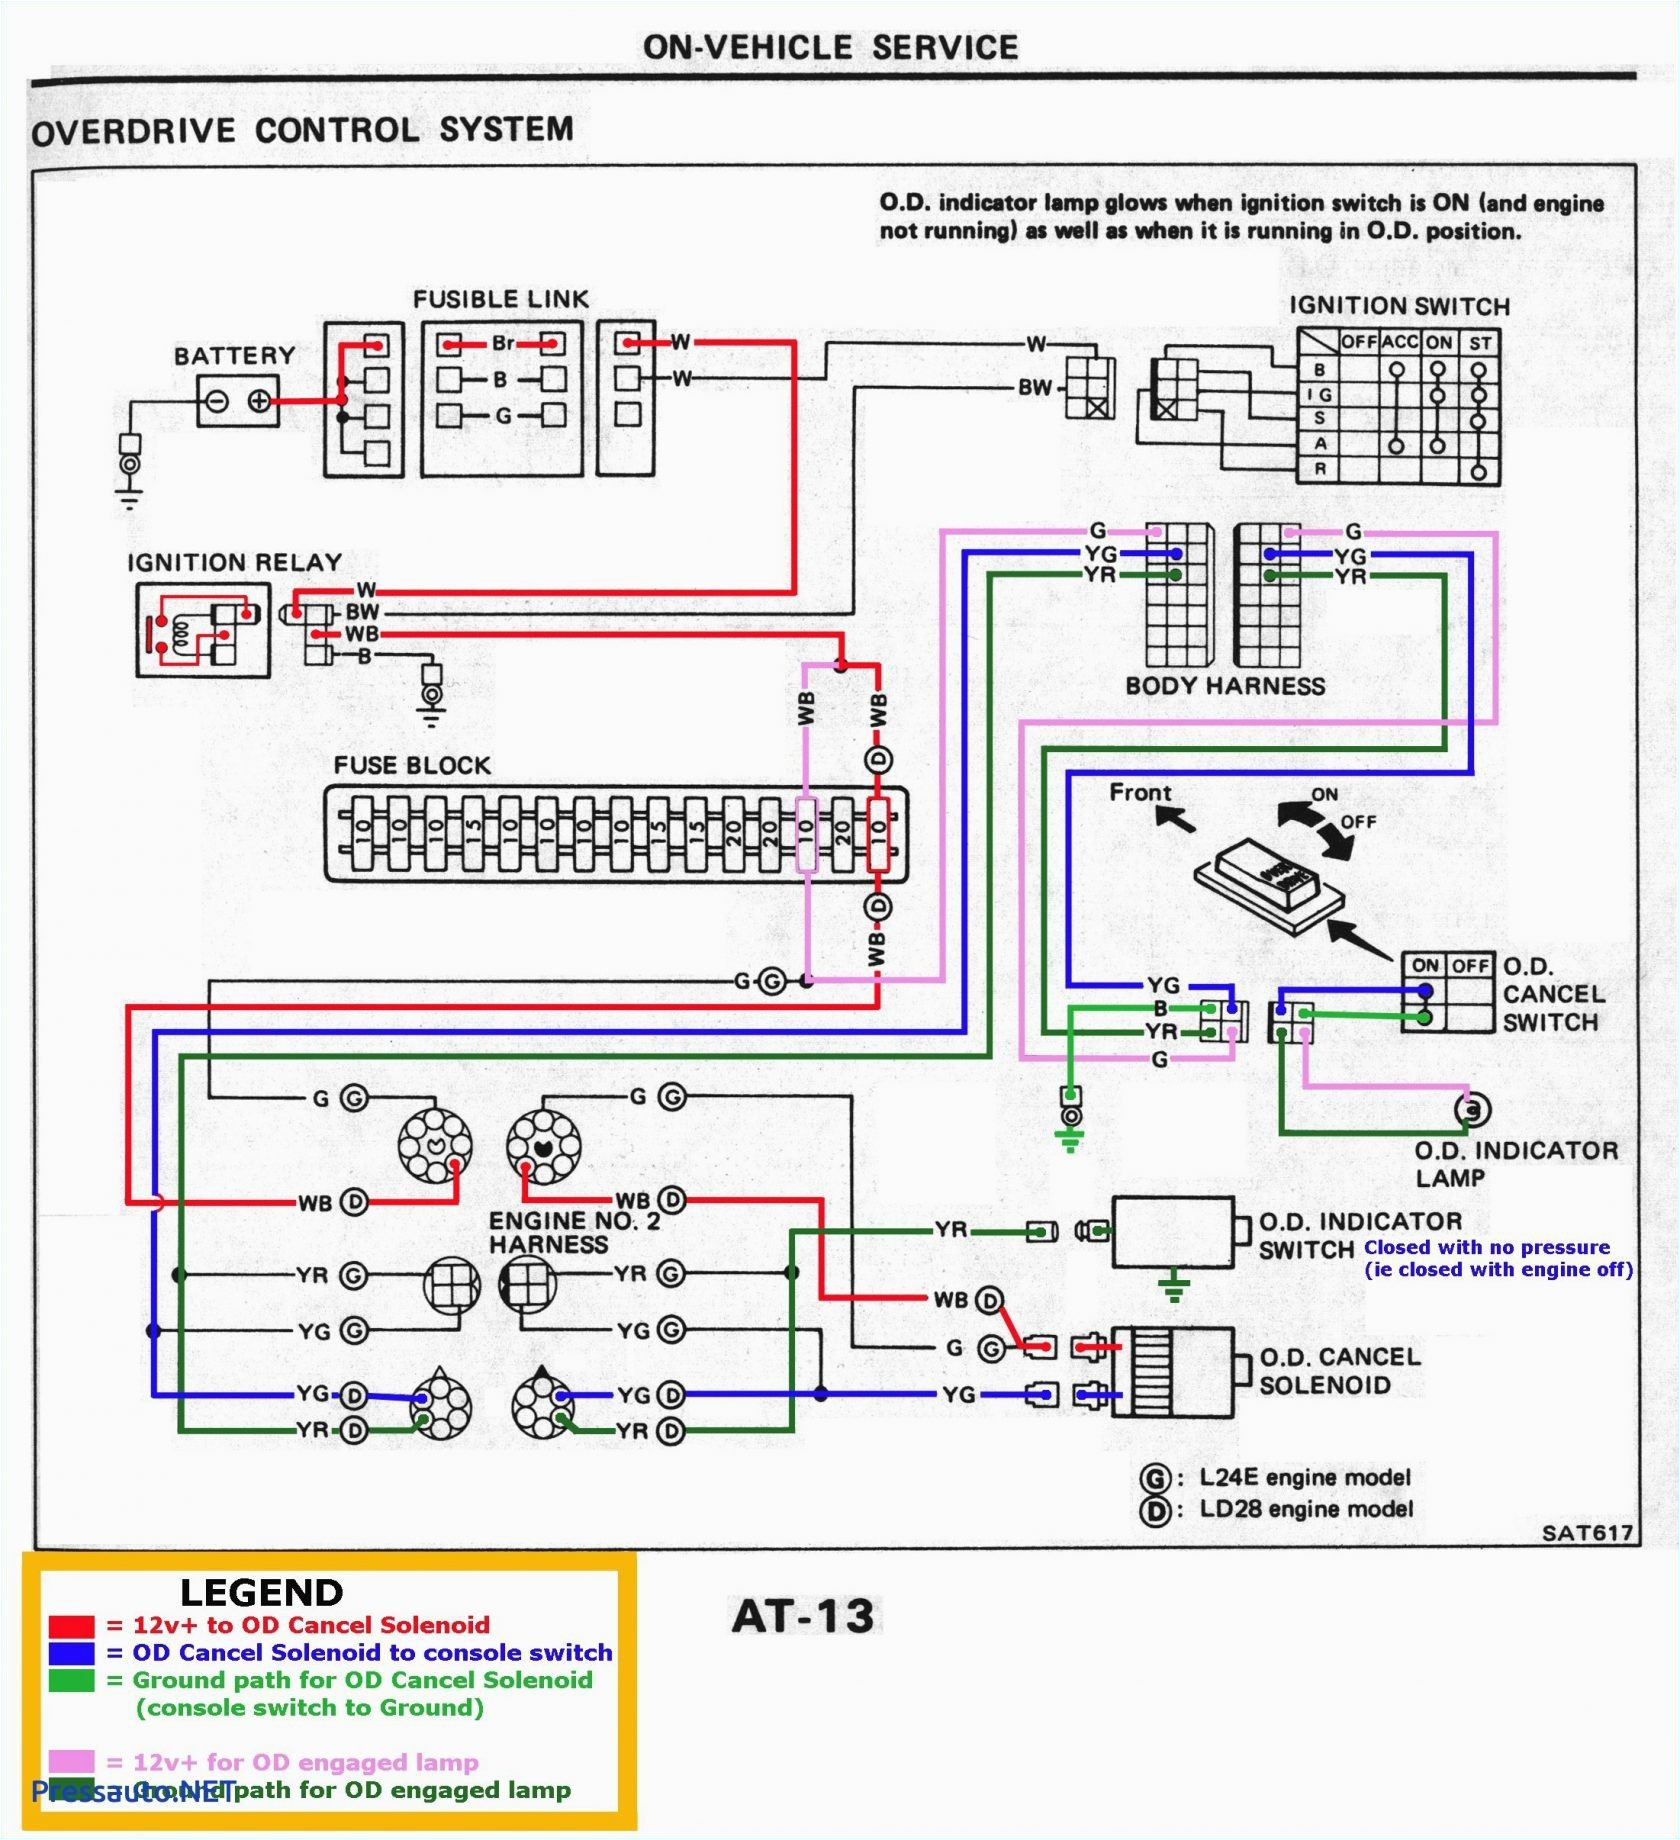 aep wiring diagram wiring diagramaep wiring diagram wiring diagram articleaep wiring diagram wiring diagram structure aep